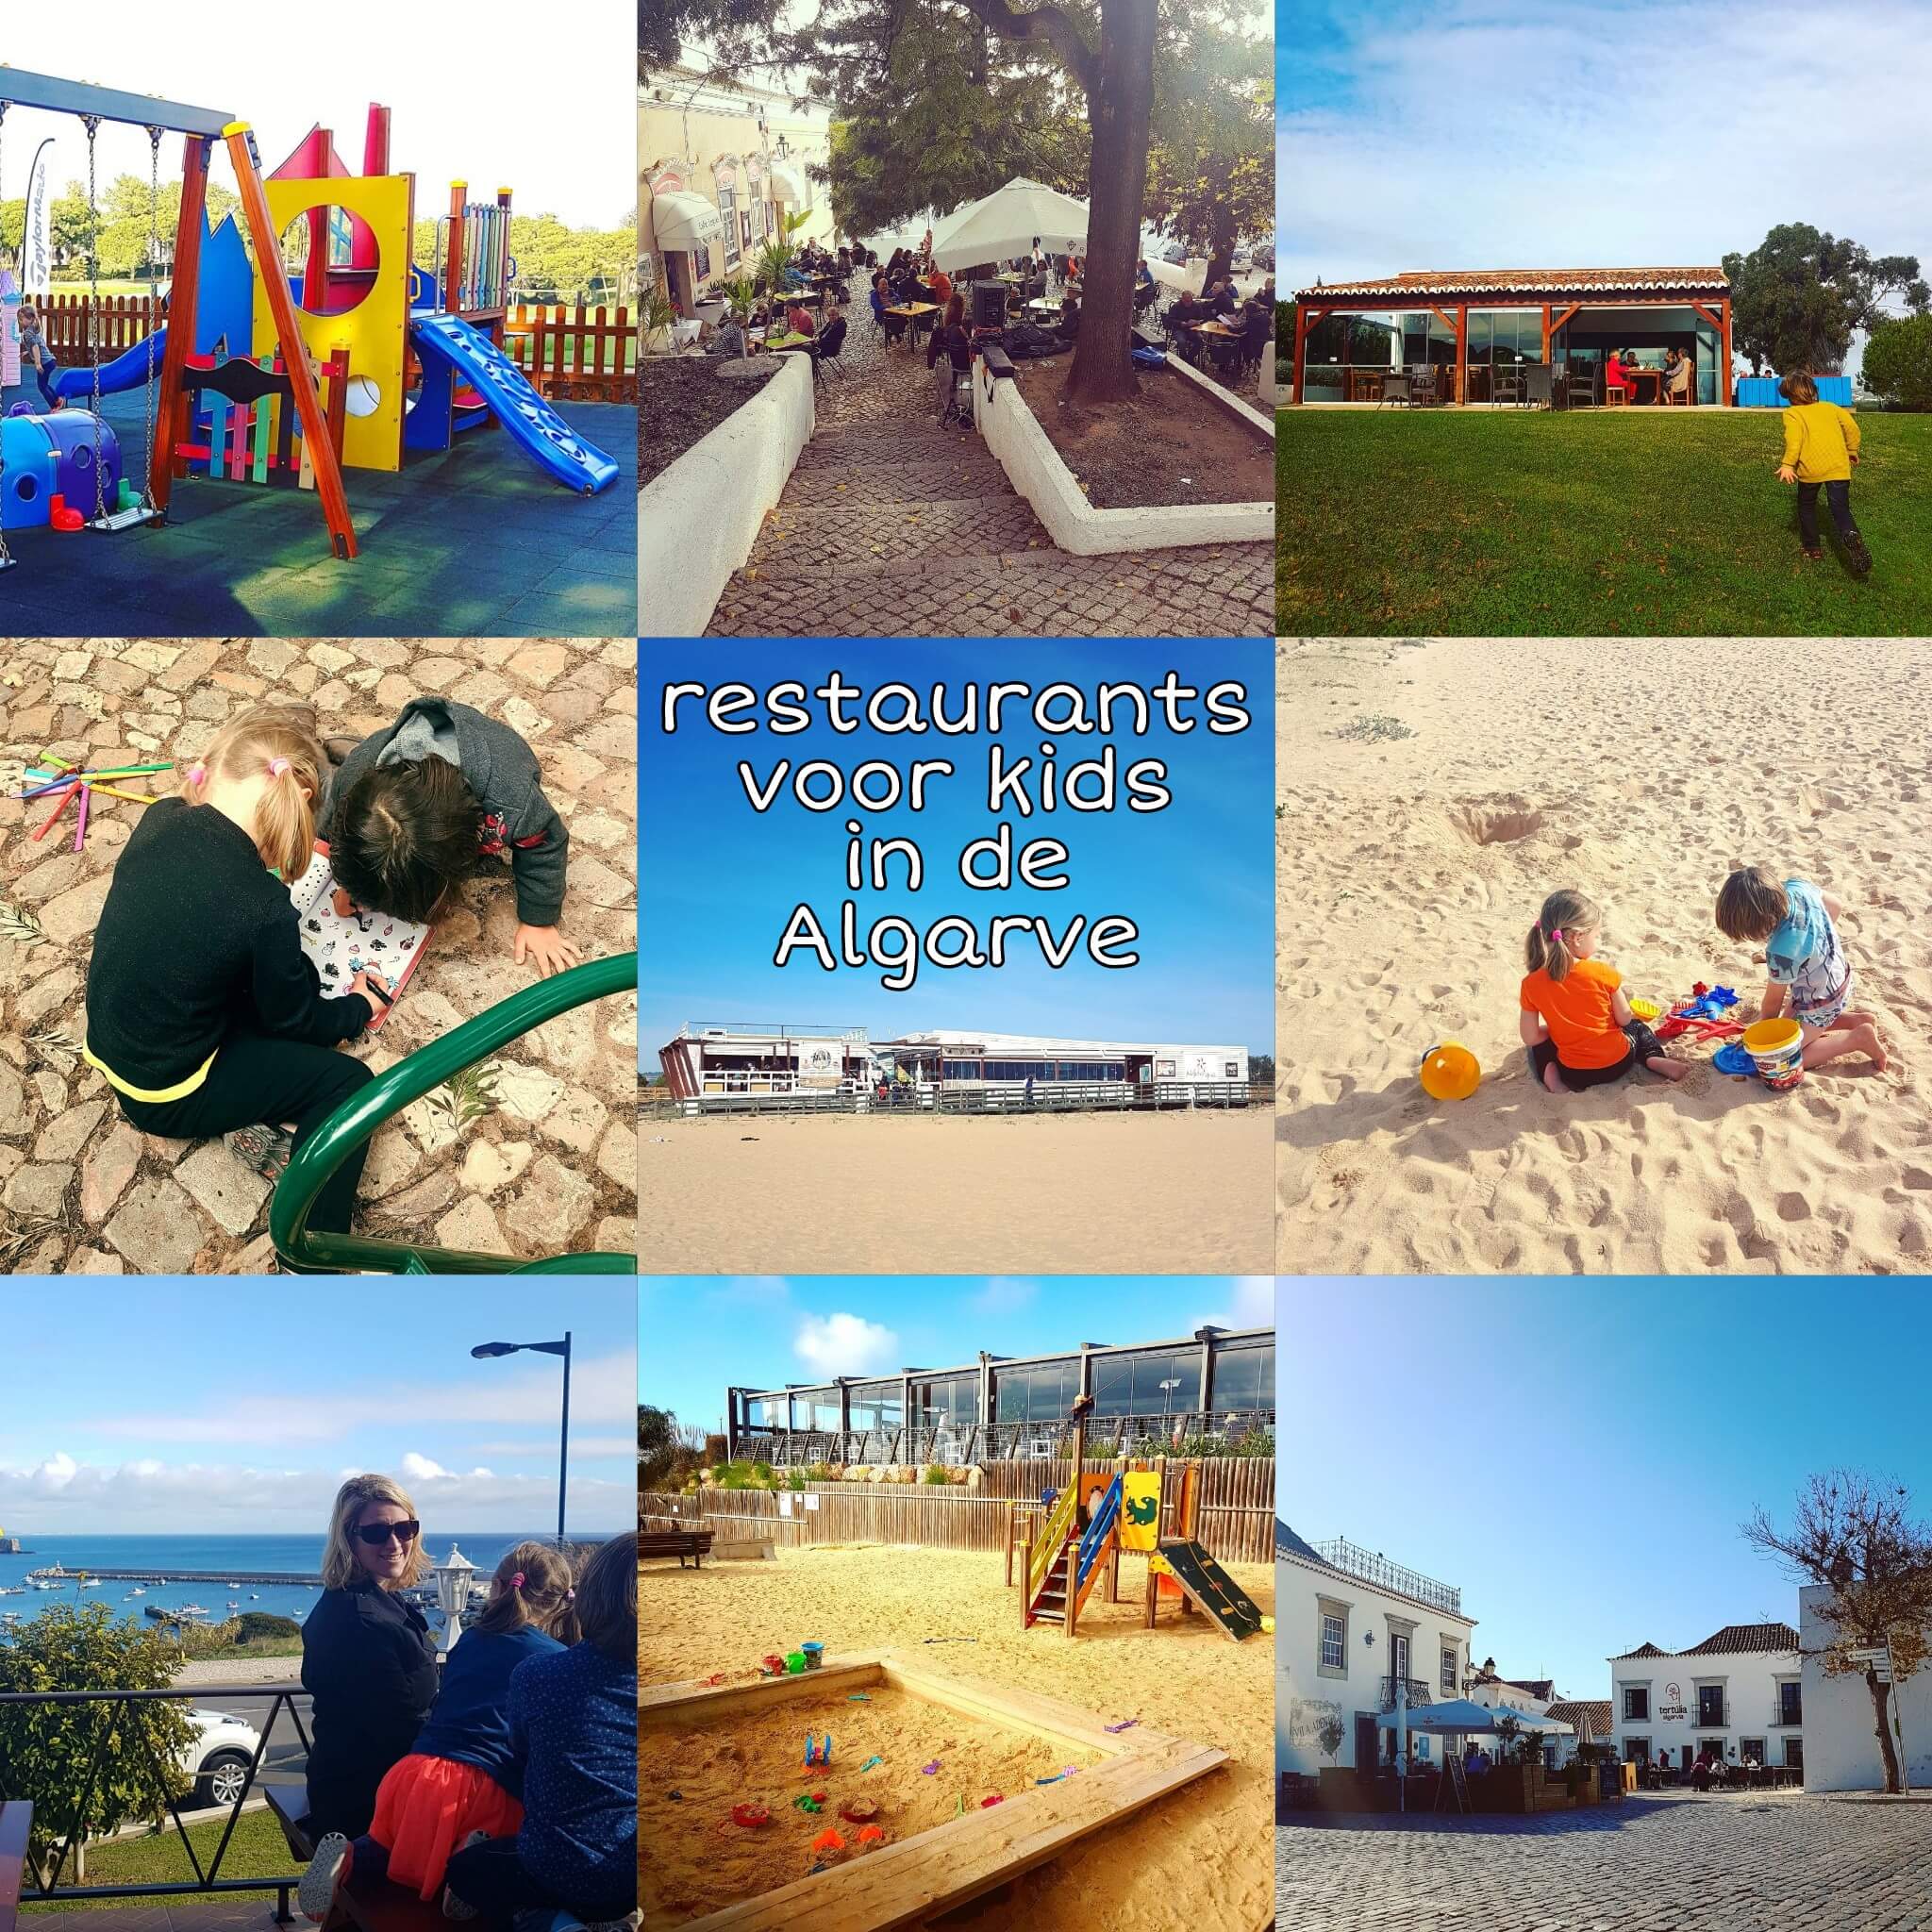 De leukste kindvriendelijke restaurants in de Algarve - Childfriendly restaurants Algarve